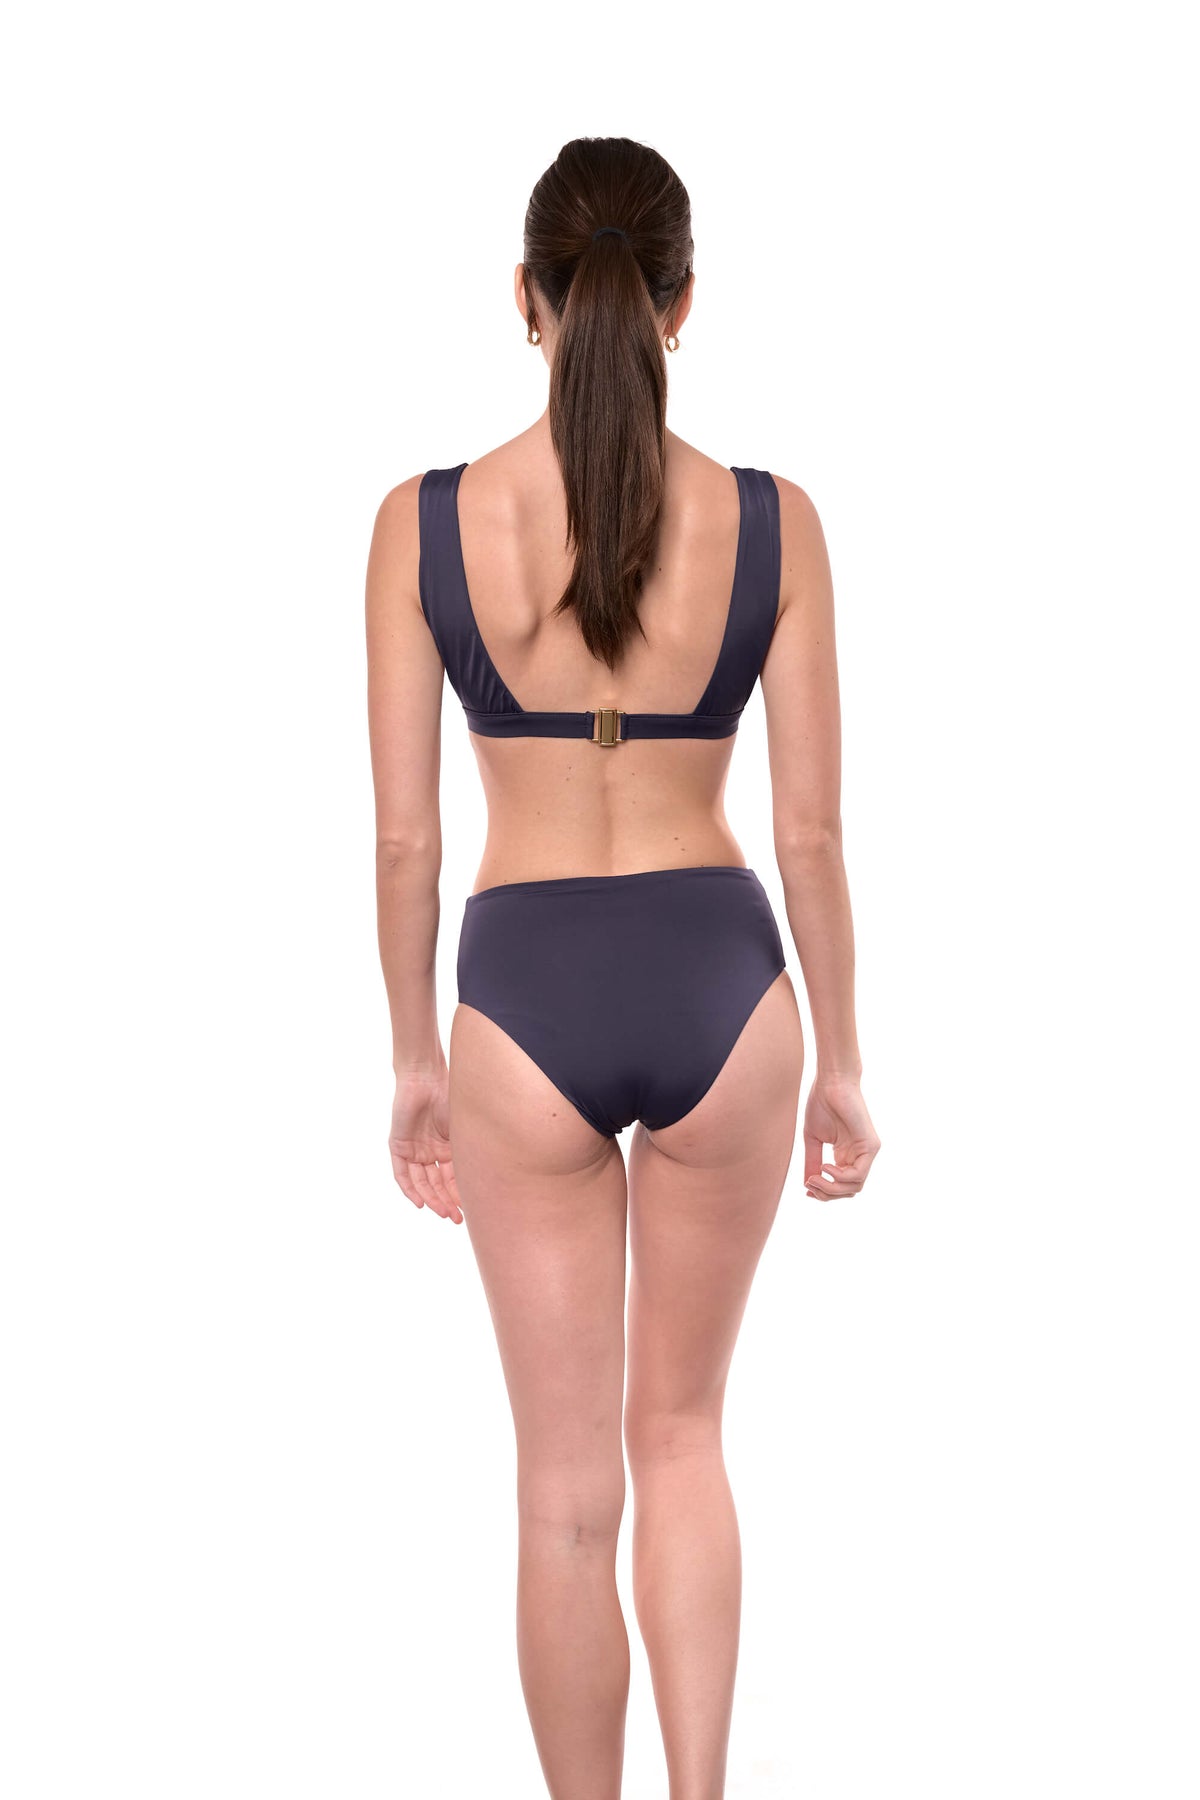 model shows the back of the Serena bikini bottom in navy blue.